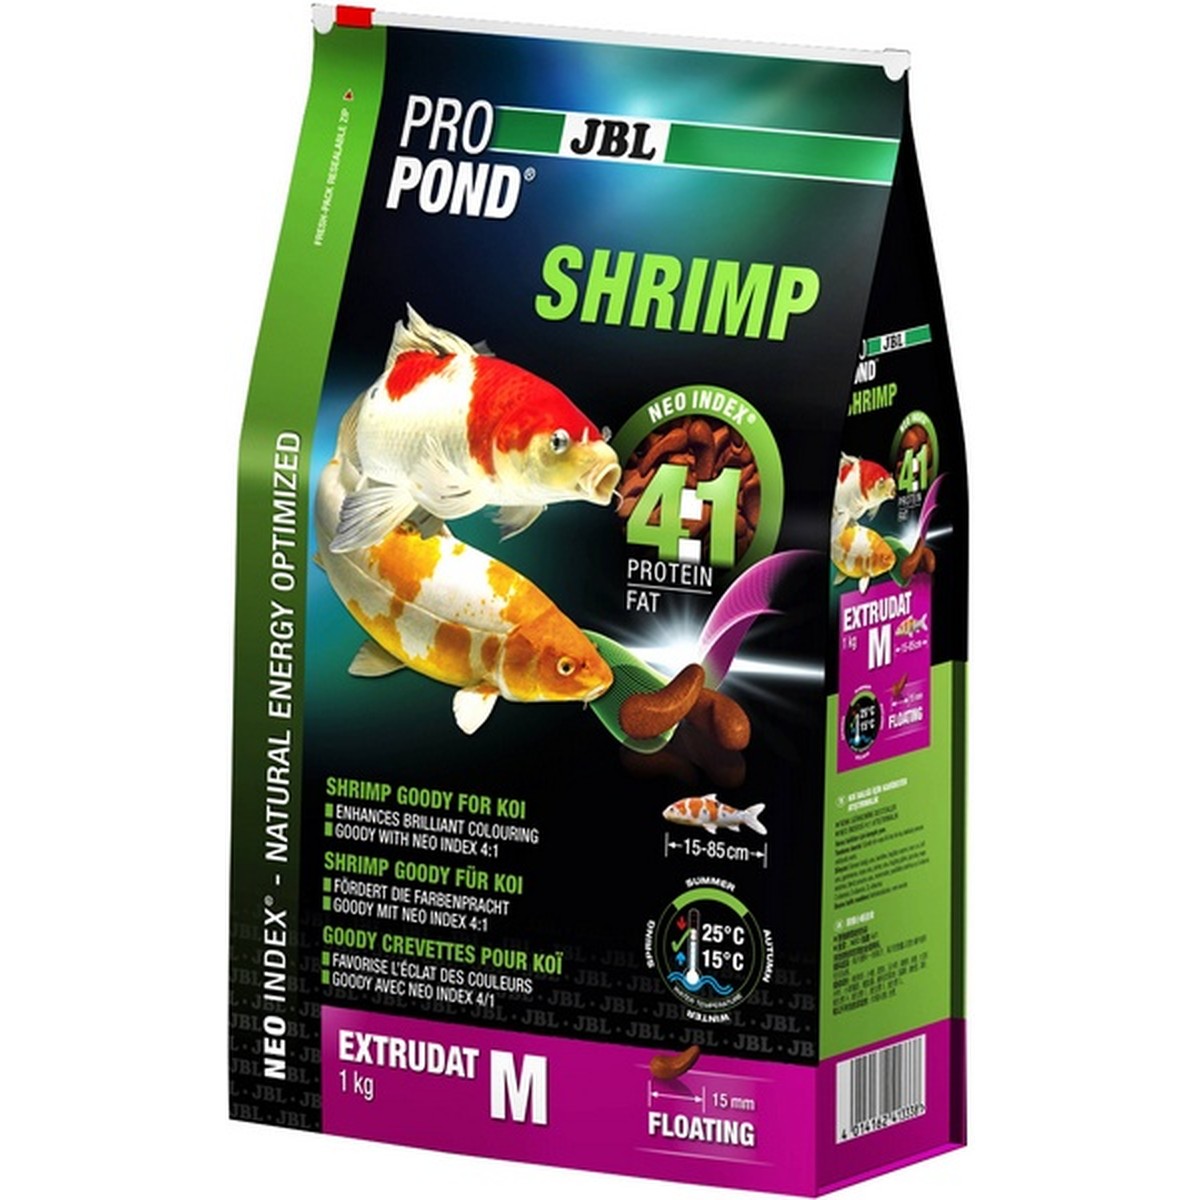   JBL ProPond Shrimp M, 1 kg  1kg